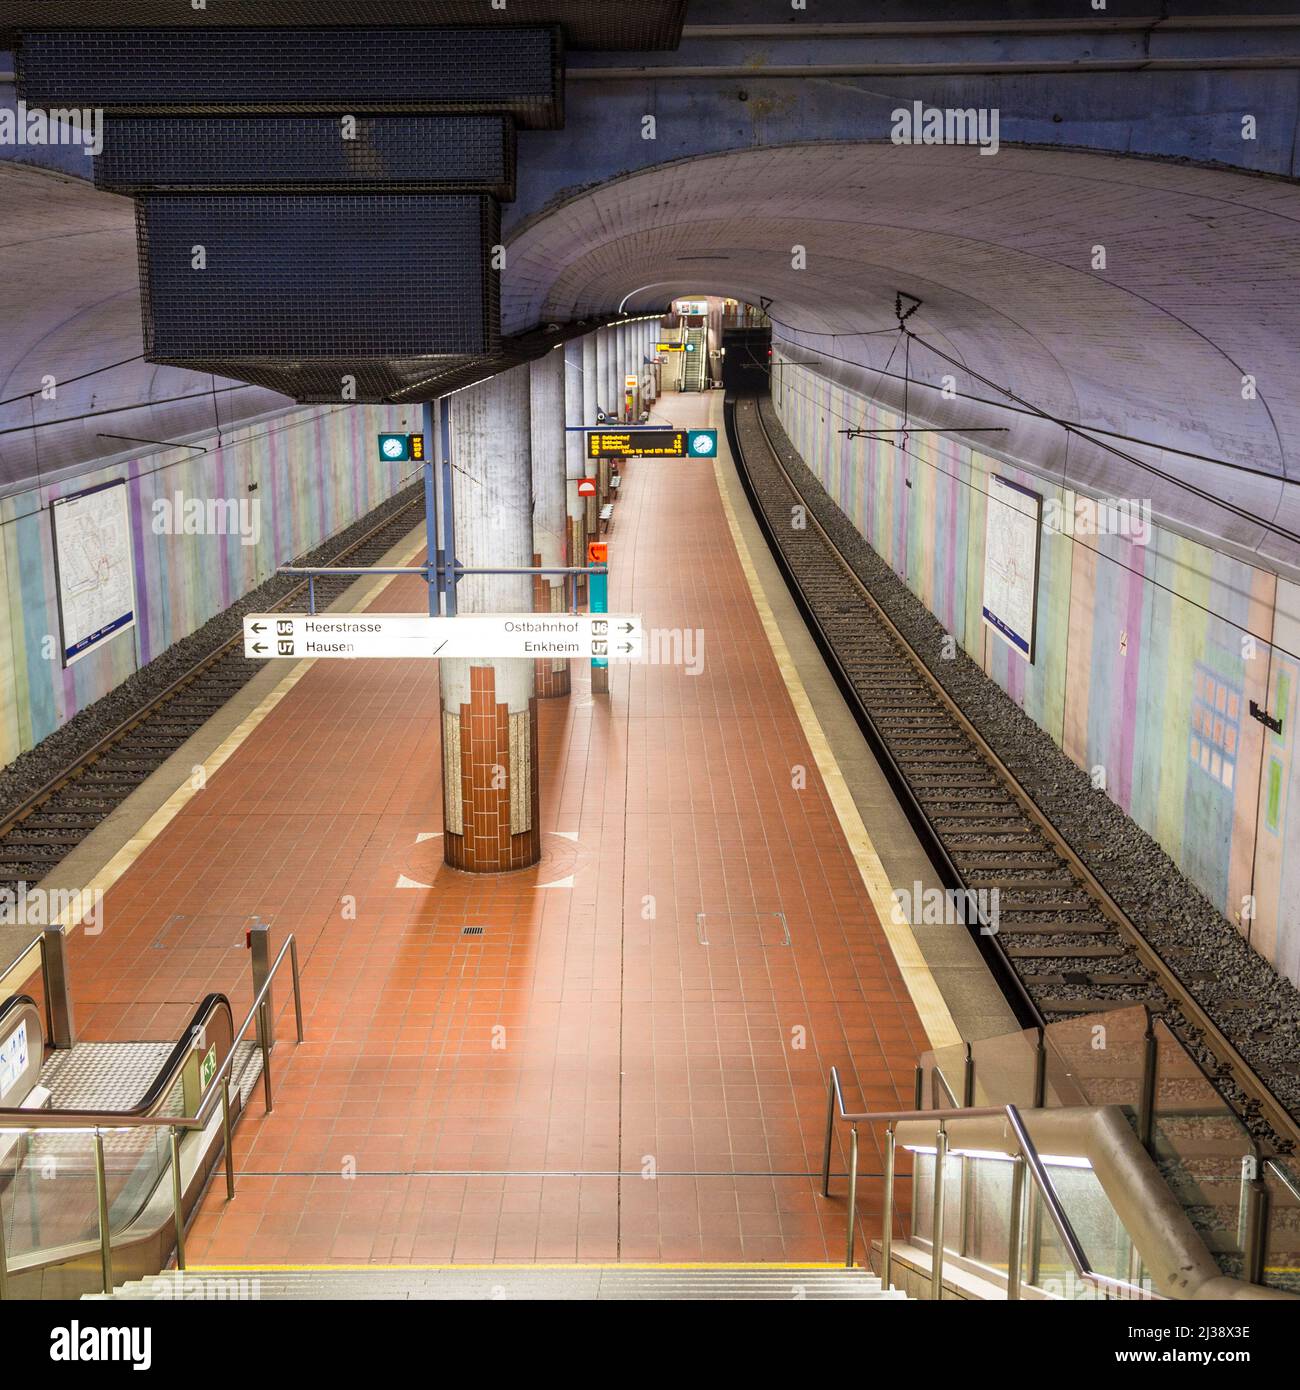 FRANCOFORTE, GERMANIA - 19 GENNAIO 2014: Stazione della metropolitana Westend. Da questa stazione operano le linee U6 nad U7. Foto Stock